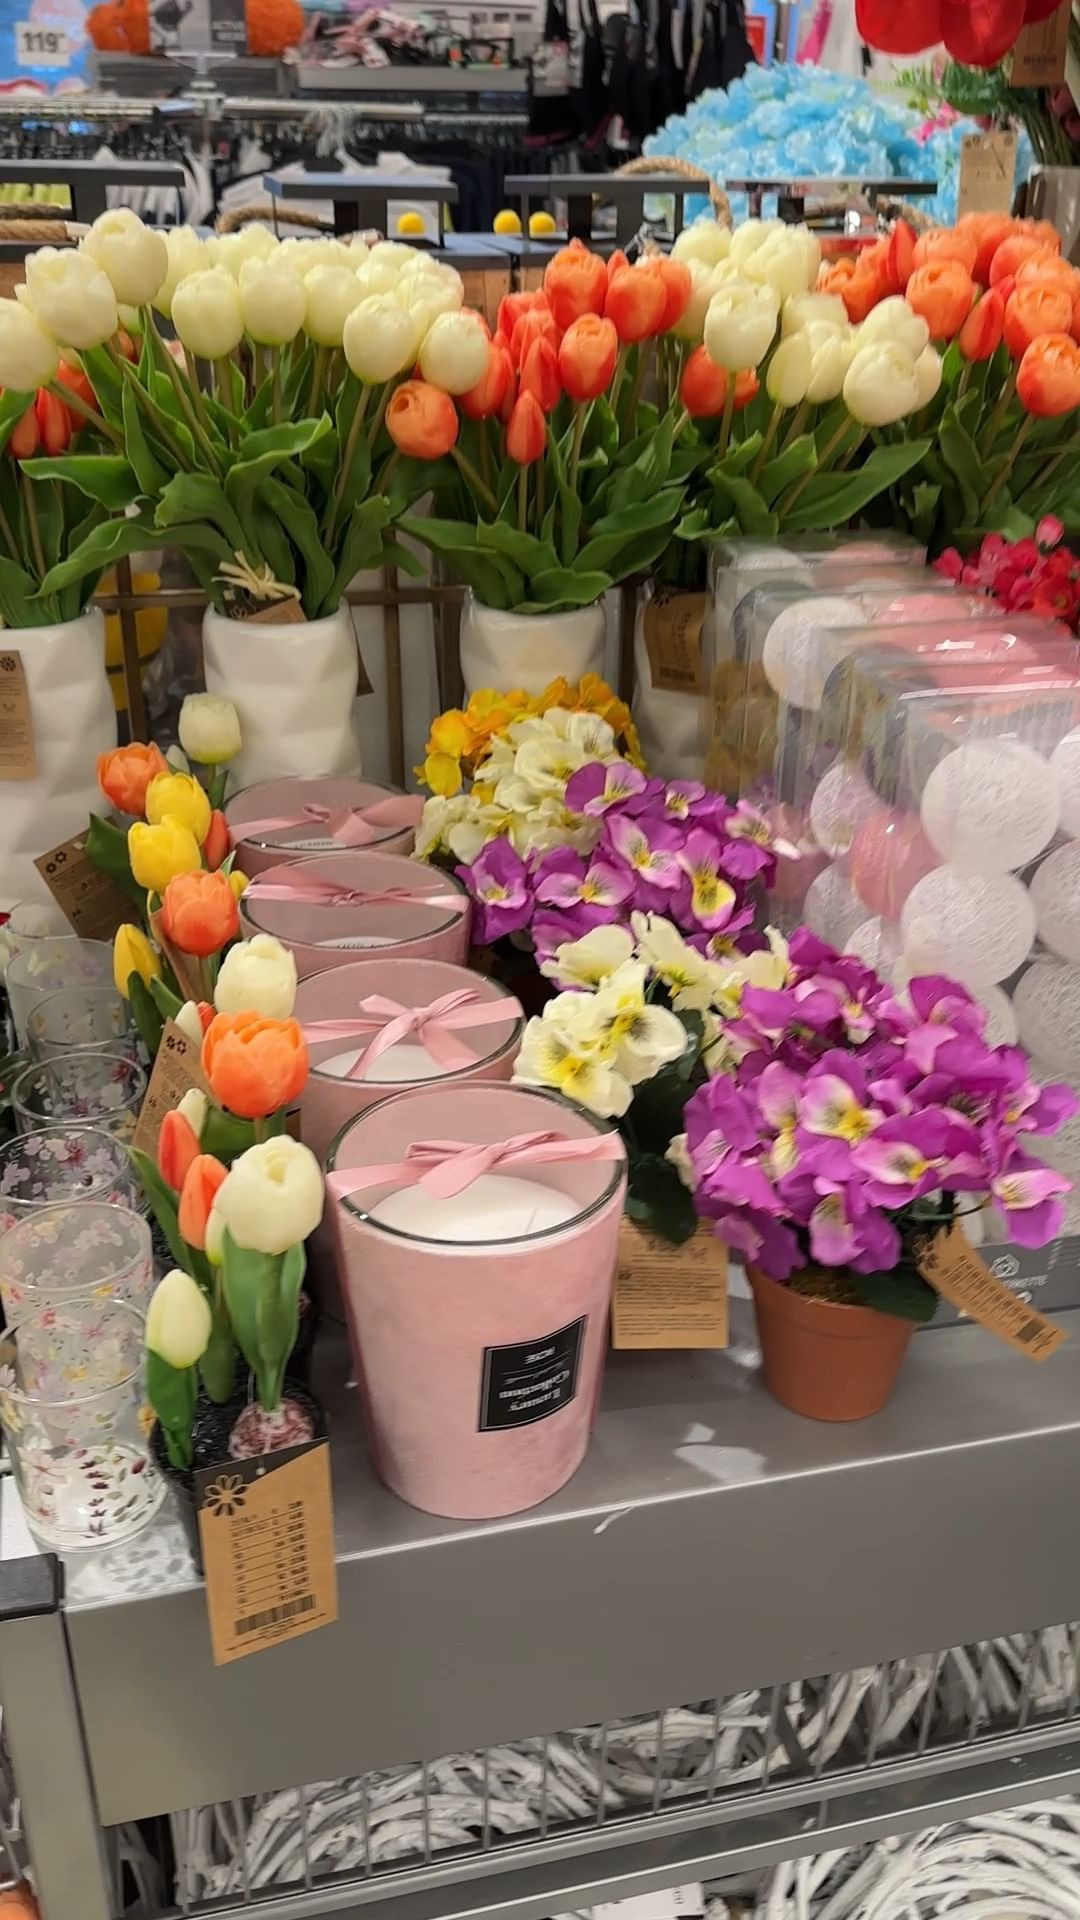 Všechny tyto krásné květiny seženete u nás v KiK <3

Jak se vám líbí?

#kikcz #kvetiny #jaro #dekorace #home